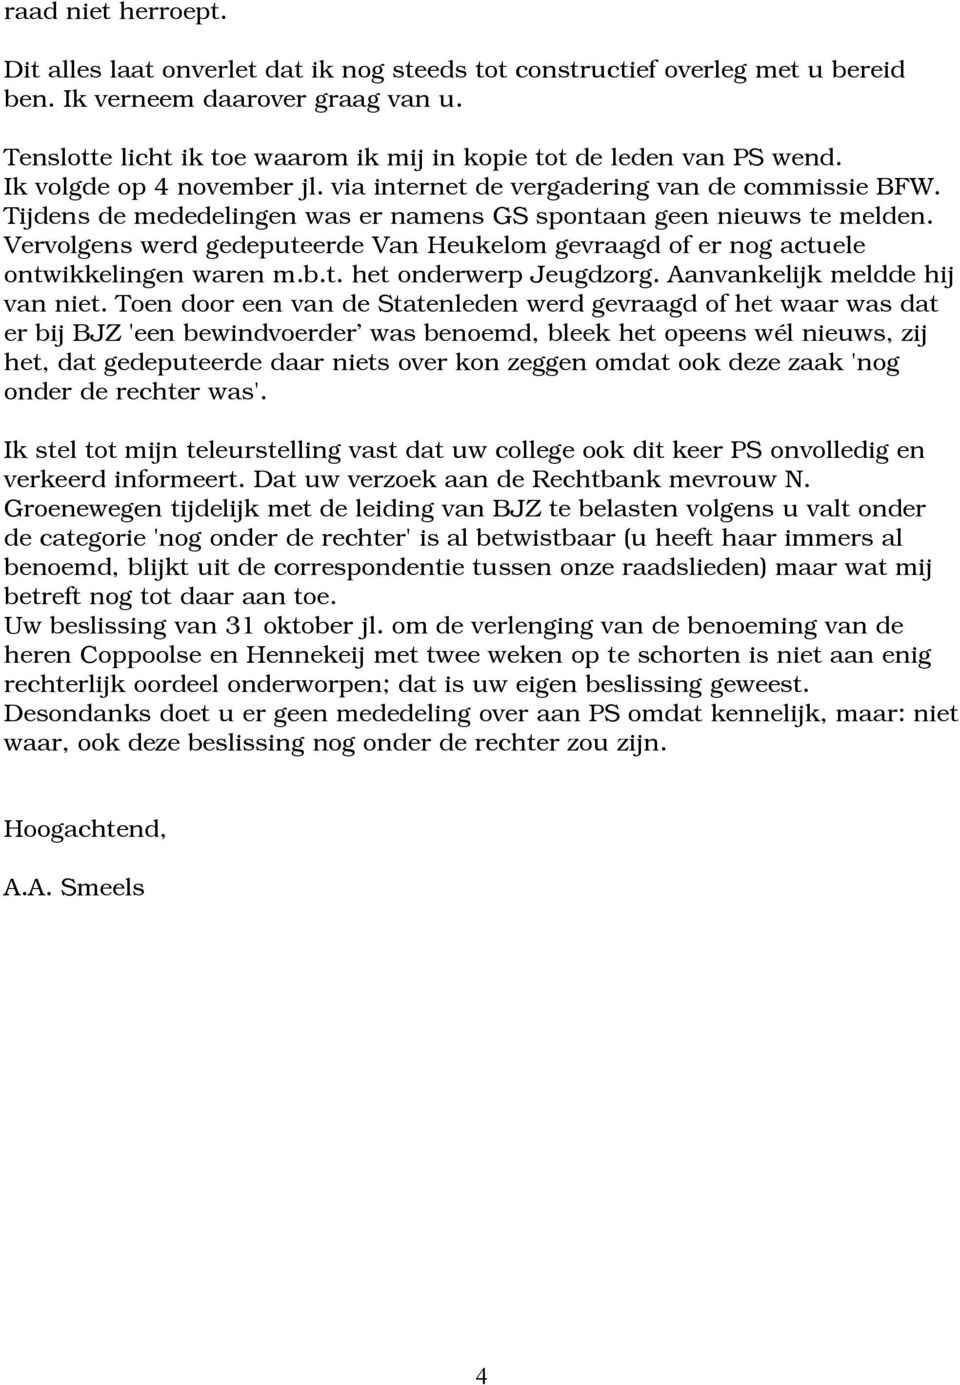 Tijdens de mededelingen was er namens GS spontaan geen nieuws te melden. Vervolgens werd gedeputeerde Van Heukelom gevraagd of er nog actuele ontwikkelingen waren m.b.t. het onderwerp Jeugdzorg.